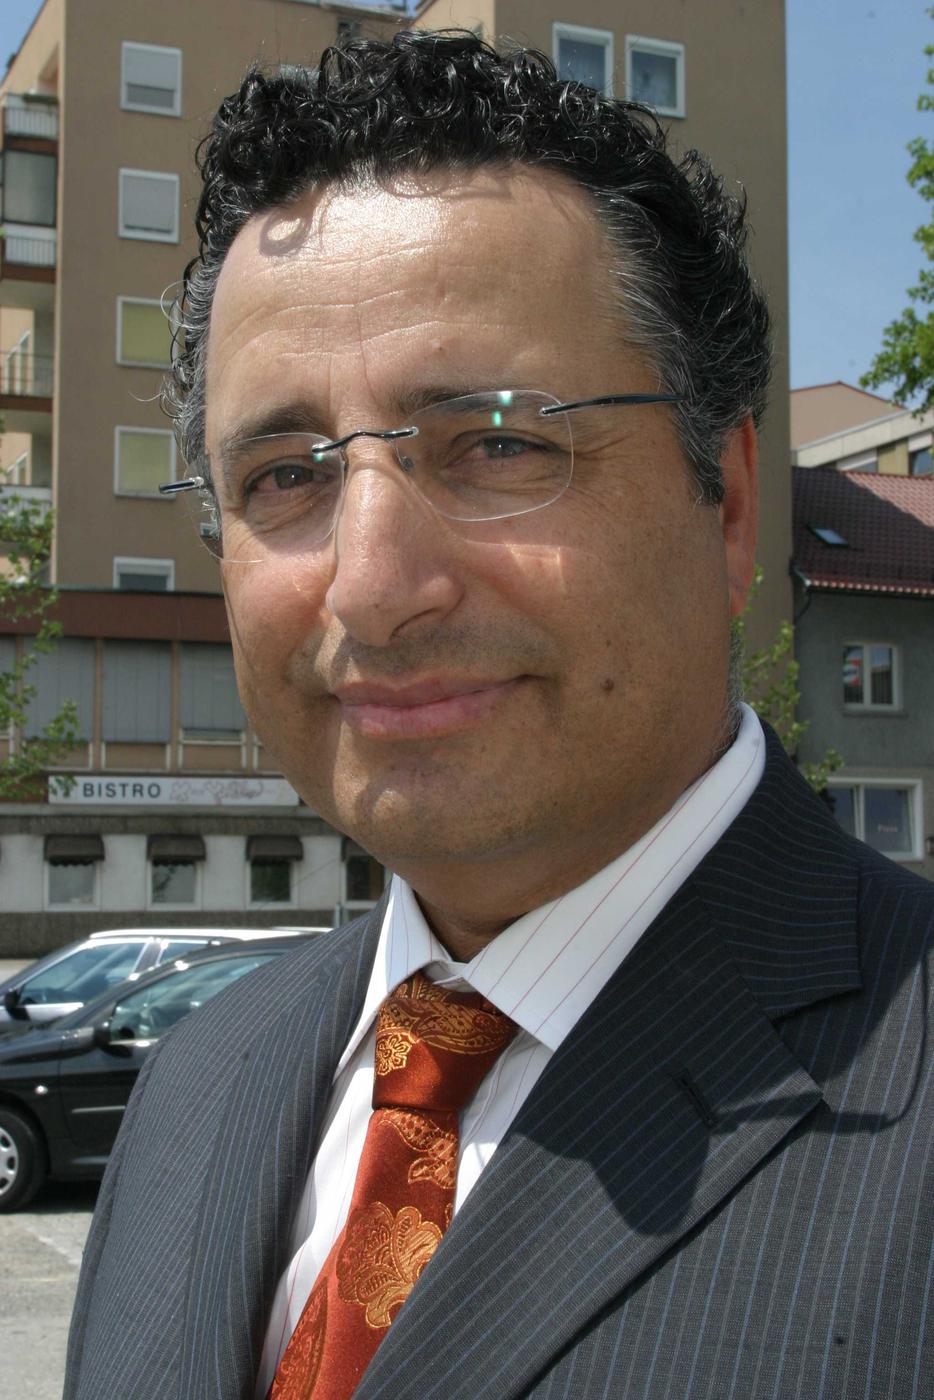 Rami Suliman
2007
Vorsitzender der Juedischen Kultusgemeinde Pforzheim